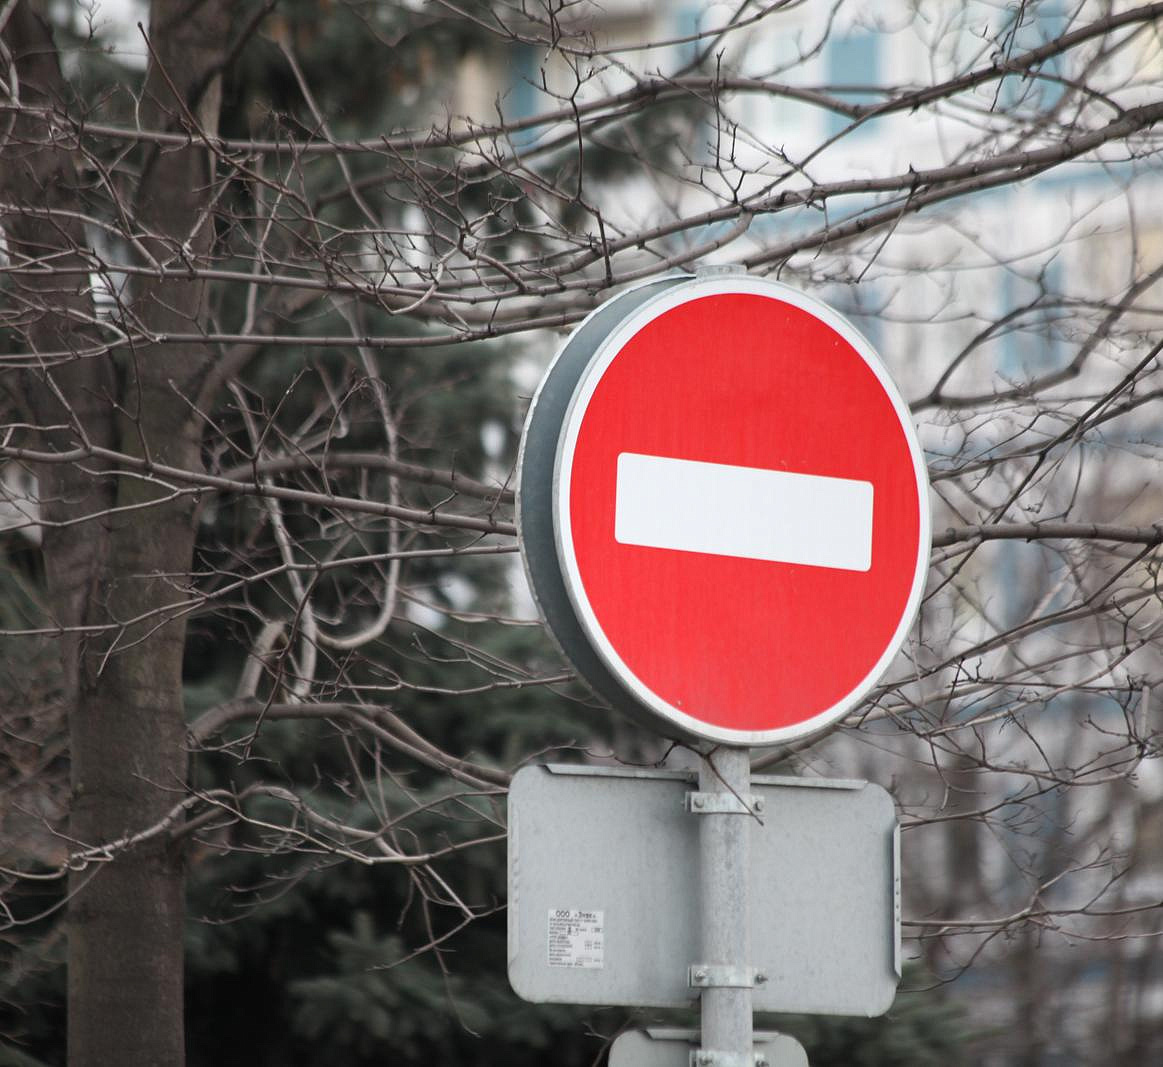 В Нижнем Новгороде введут ограничение движения на улице Красные Зори